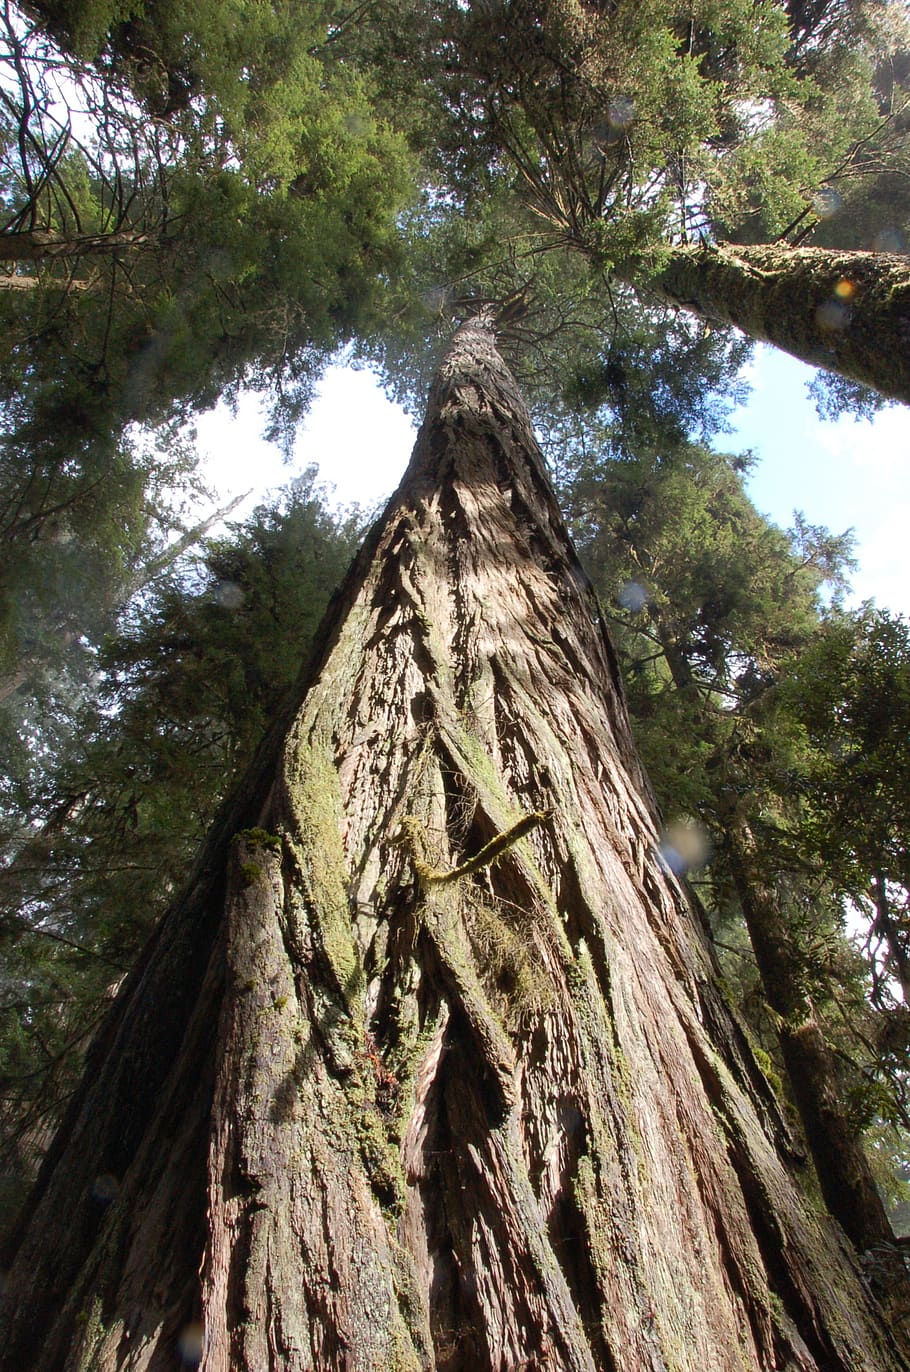 secoyas de California, secoyas, árboles, secuoyas, bosques, árboles gigantes, árboles altos, árbol, vista de ángulo bajo, planta